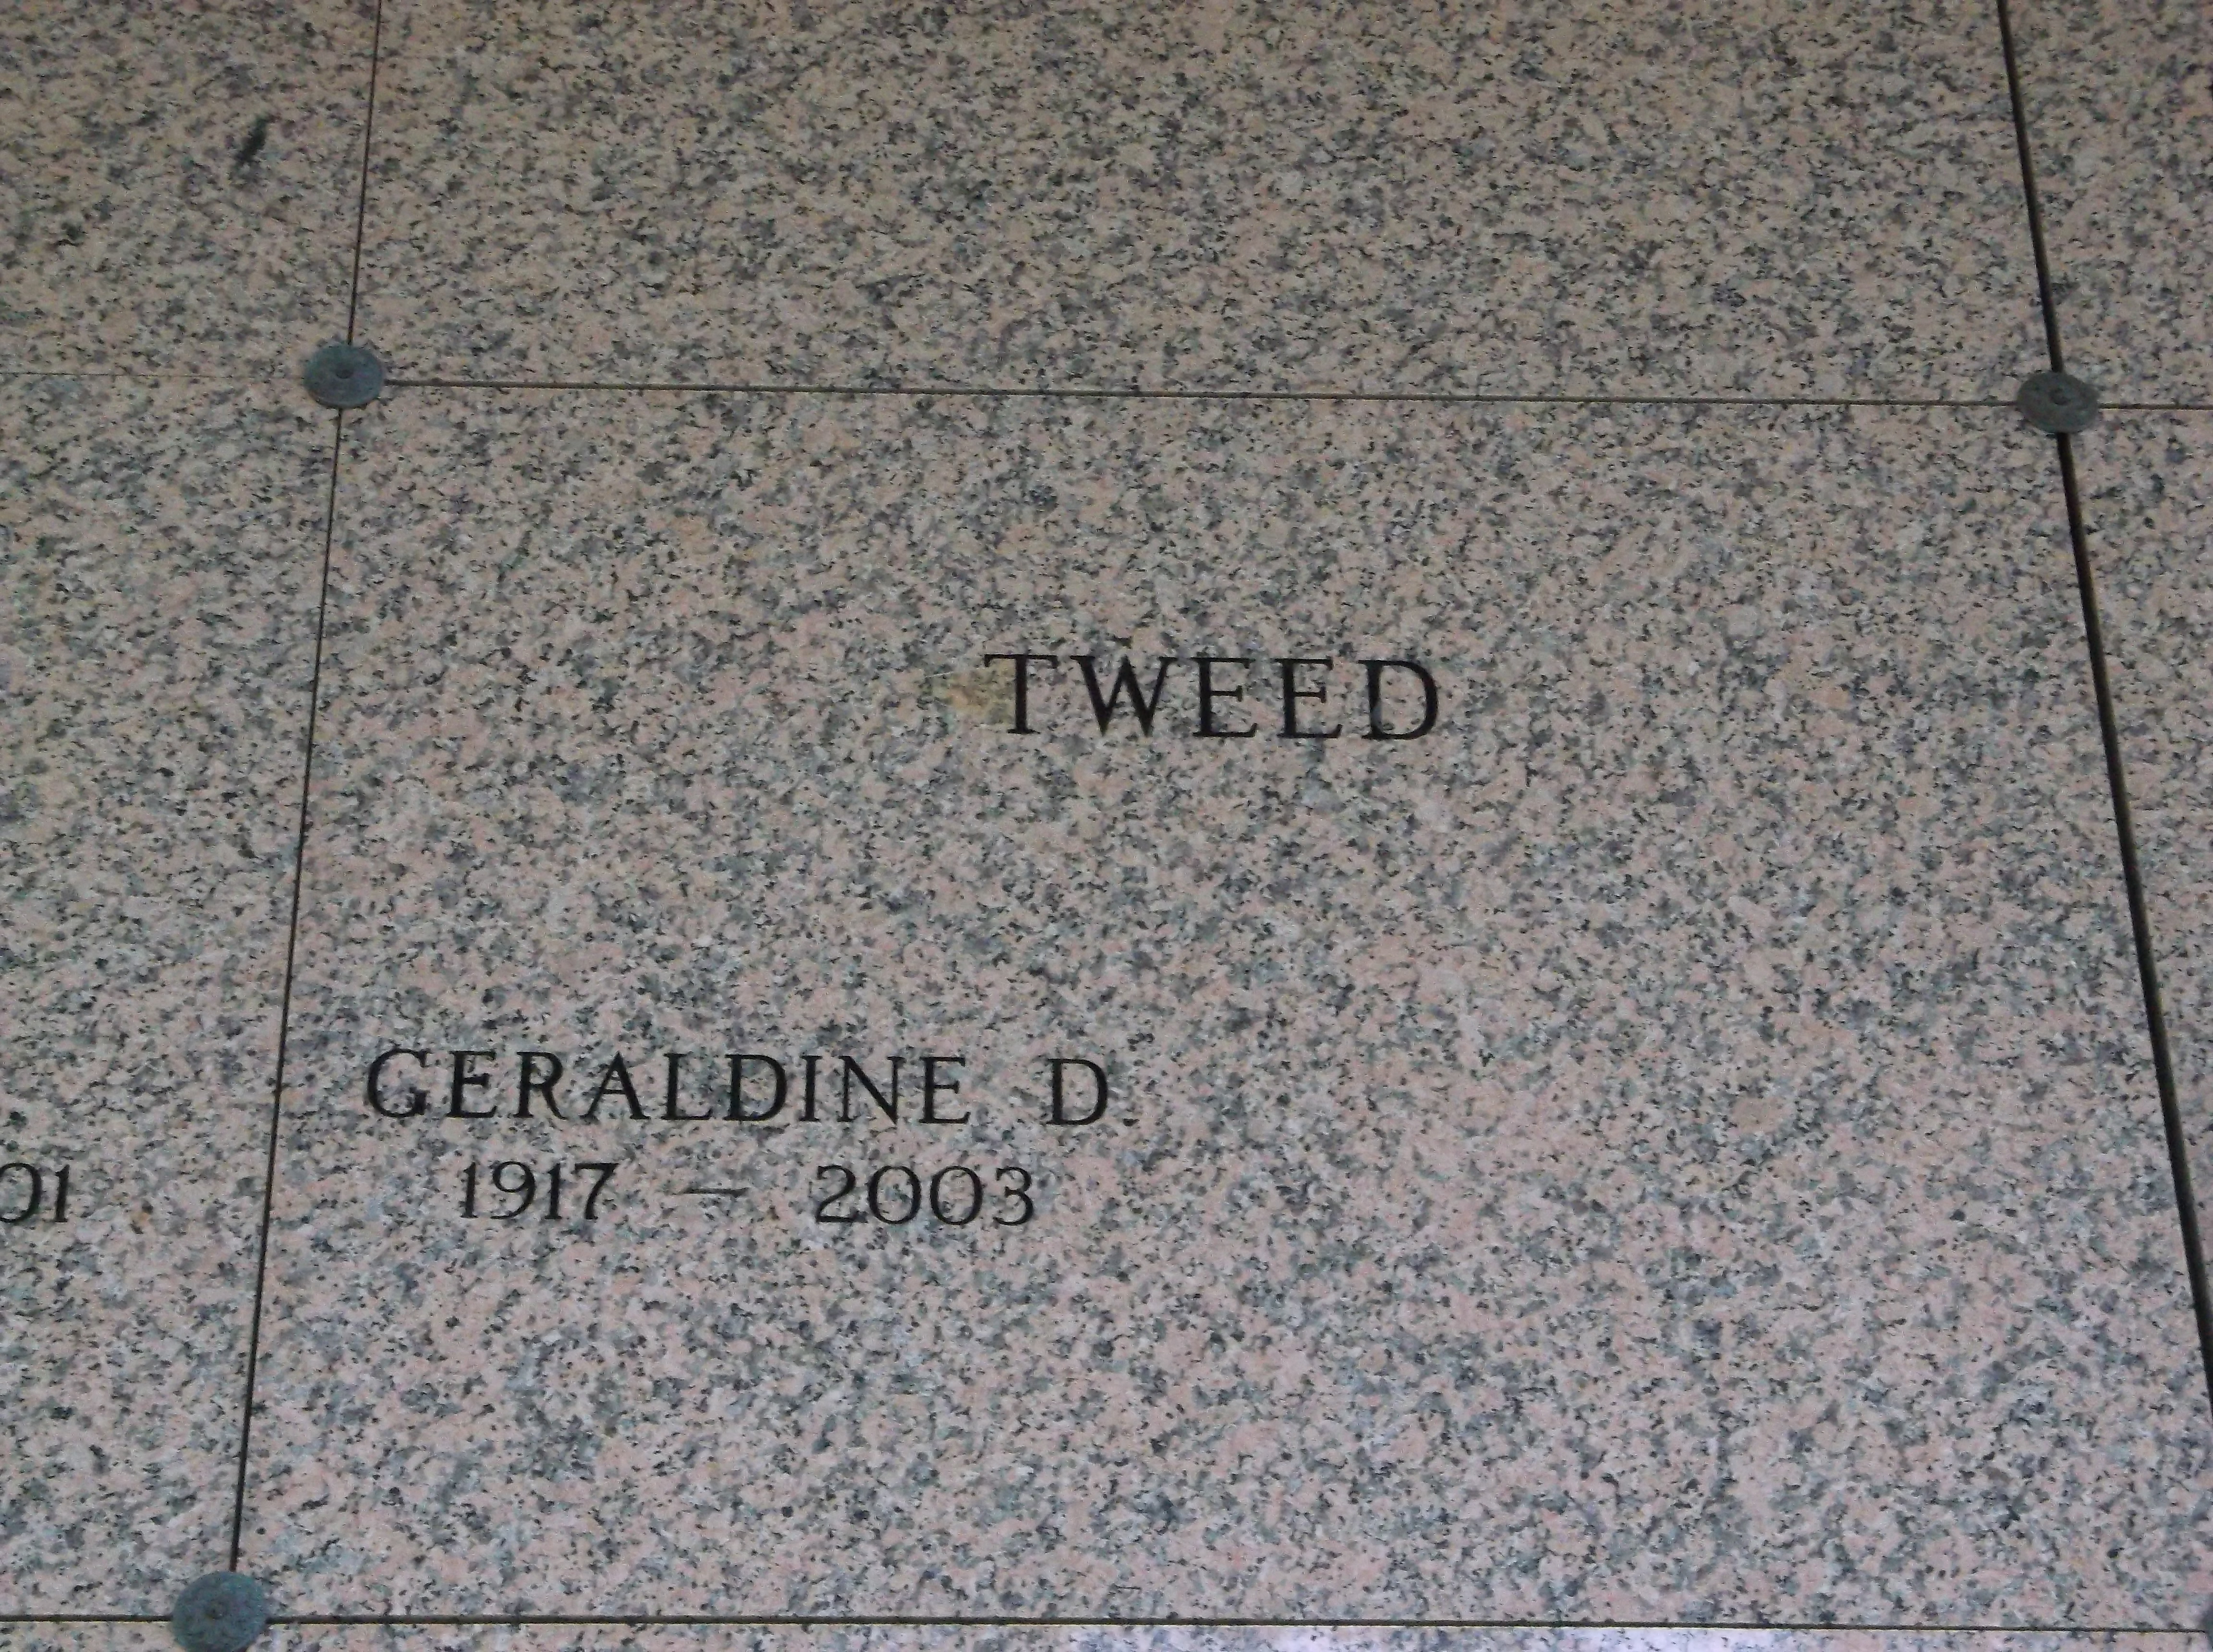 Geraldine D Tweed